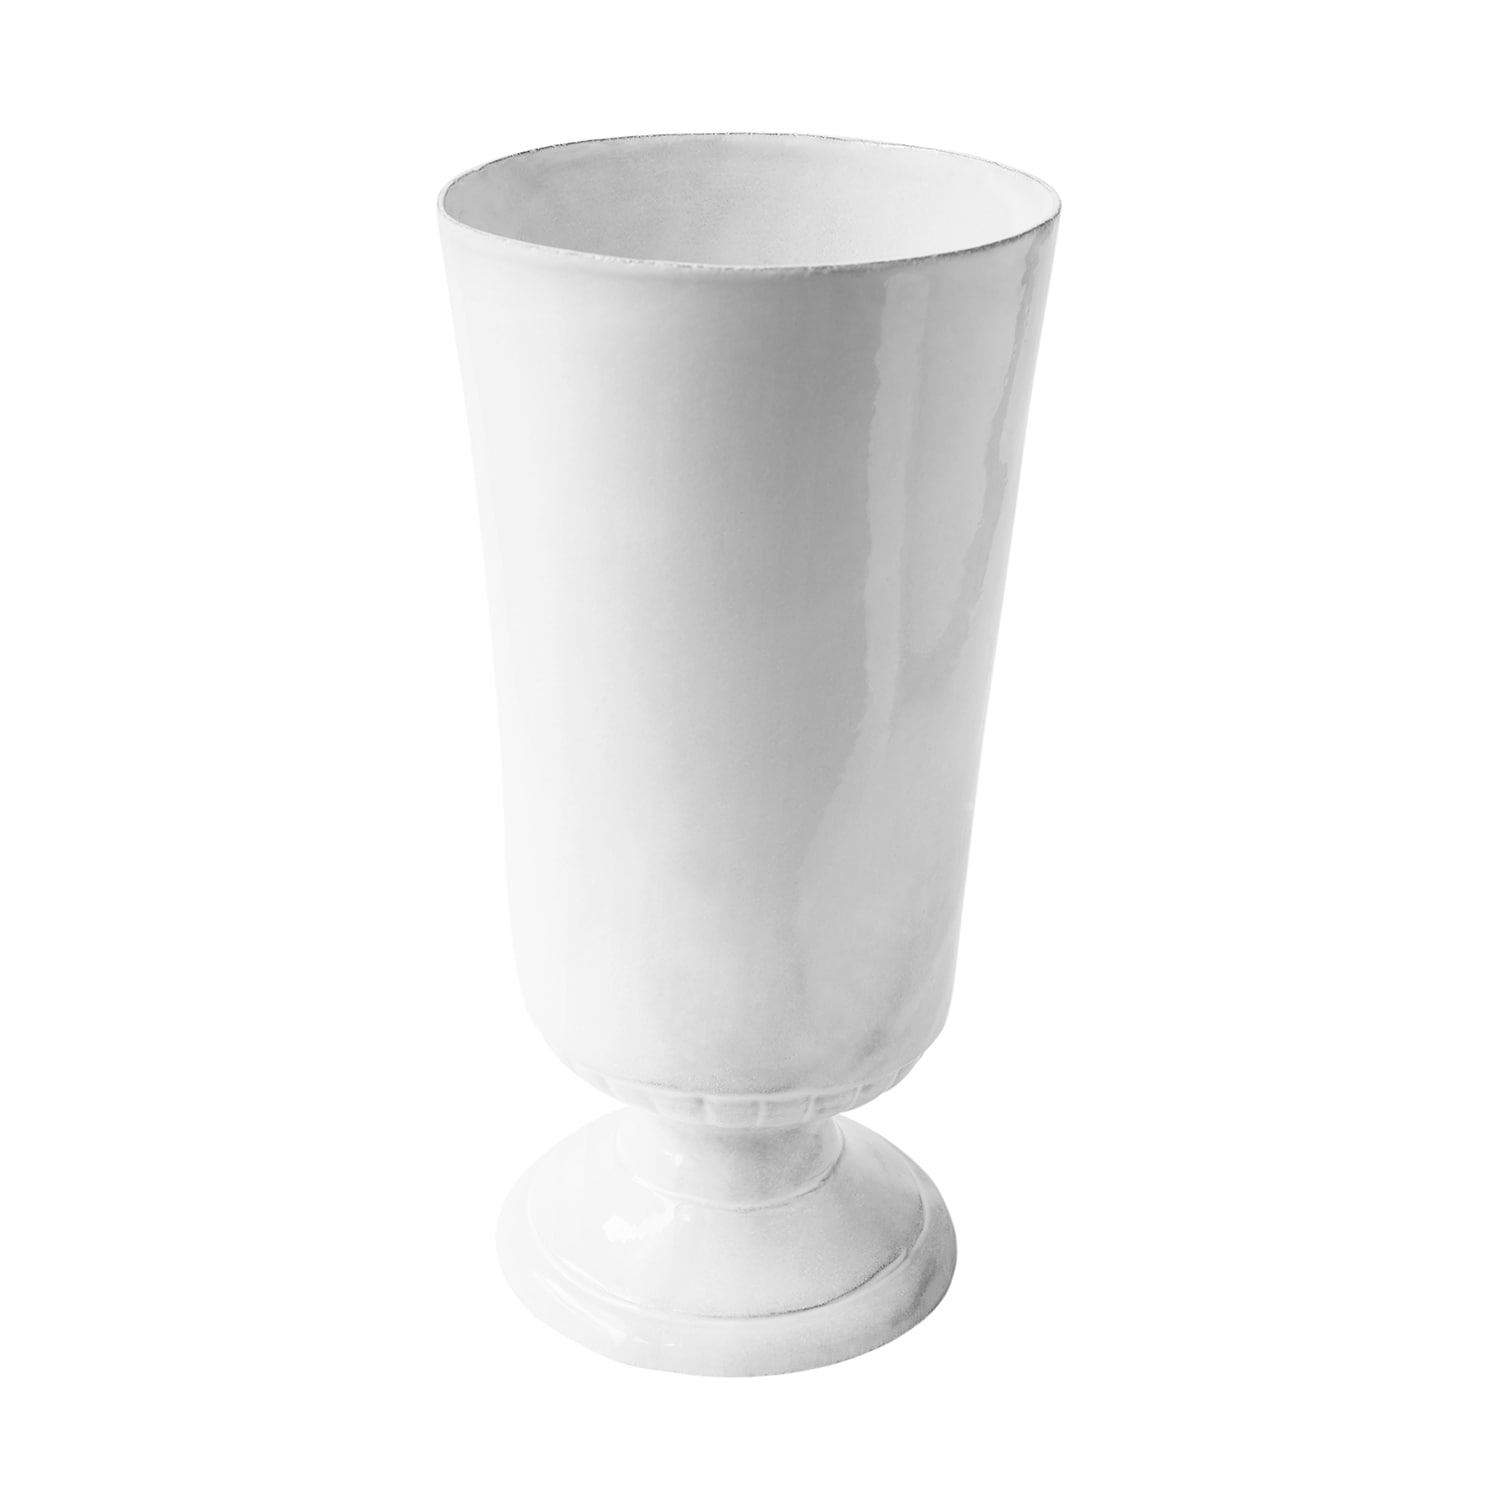 [Casper] Large Vase